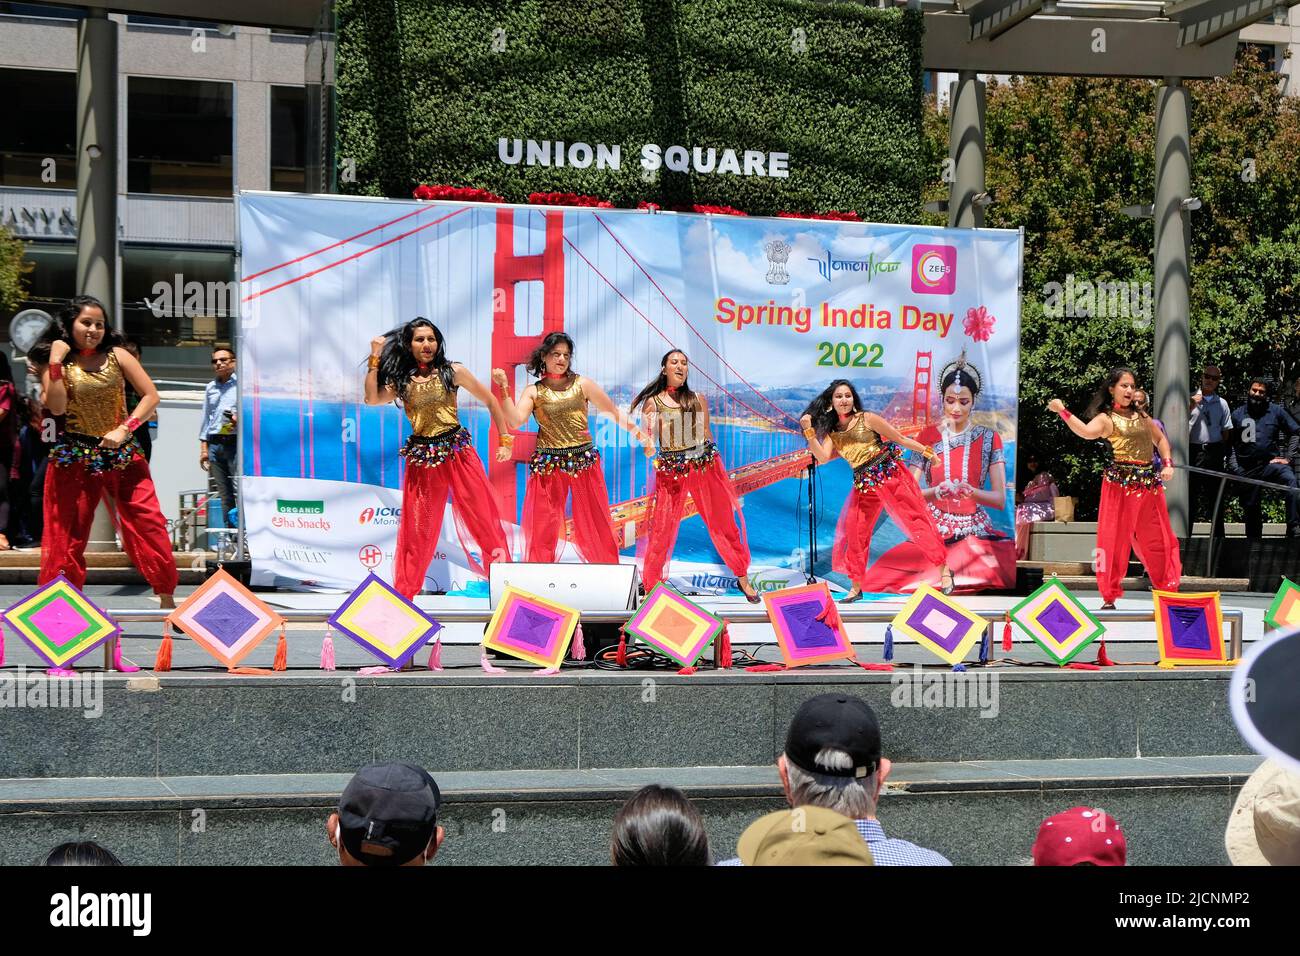 Artisti al Spring India Day 2022 presso Union Square nel centro di San Francisco, California, che celebrano la cultura indiana nella Bay Area. Foto Stock